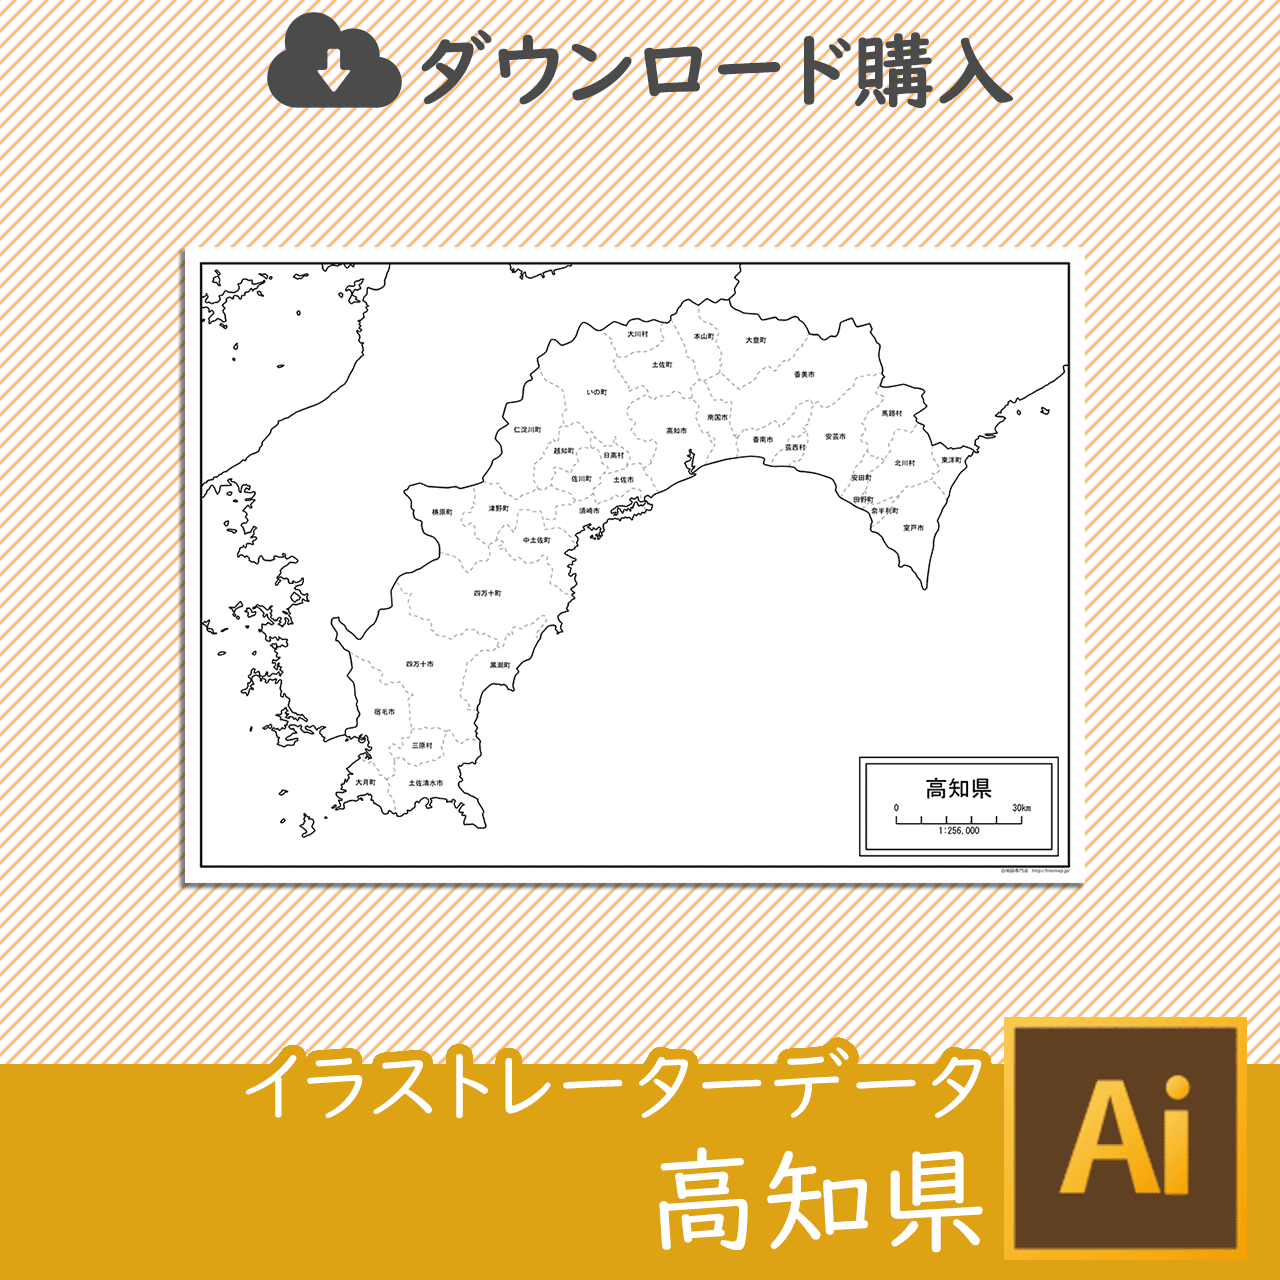 高知県のaiデータのサムネイル画像